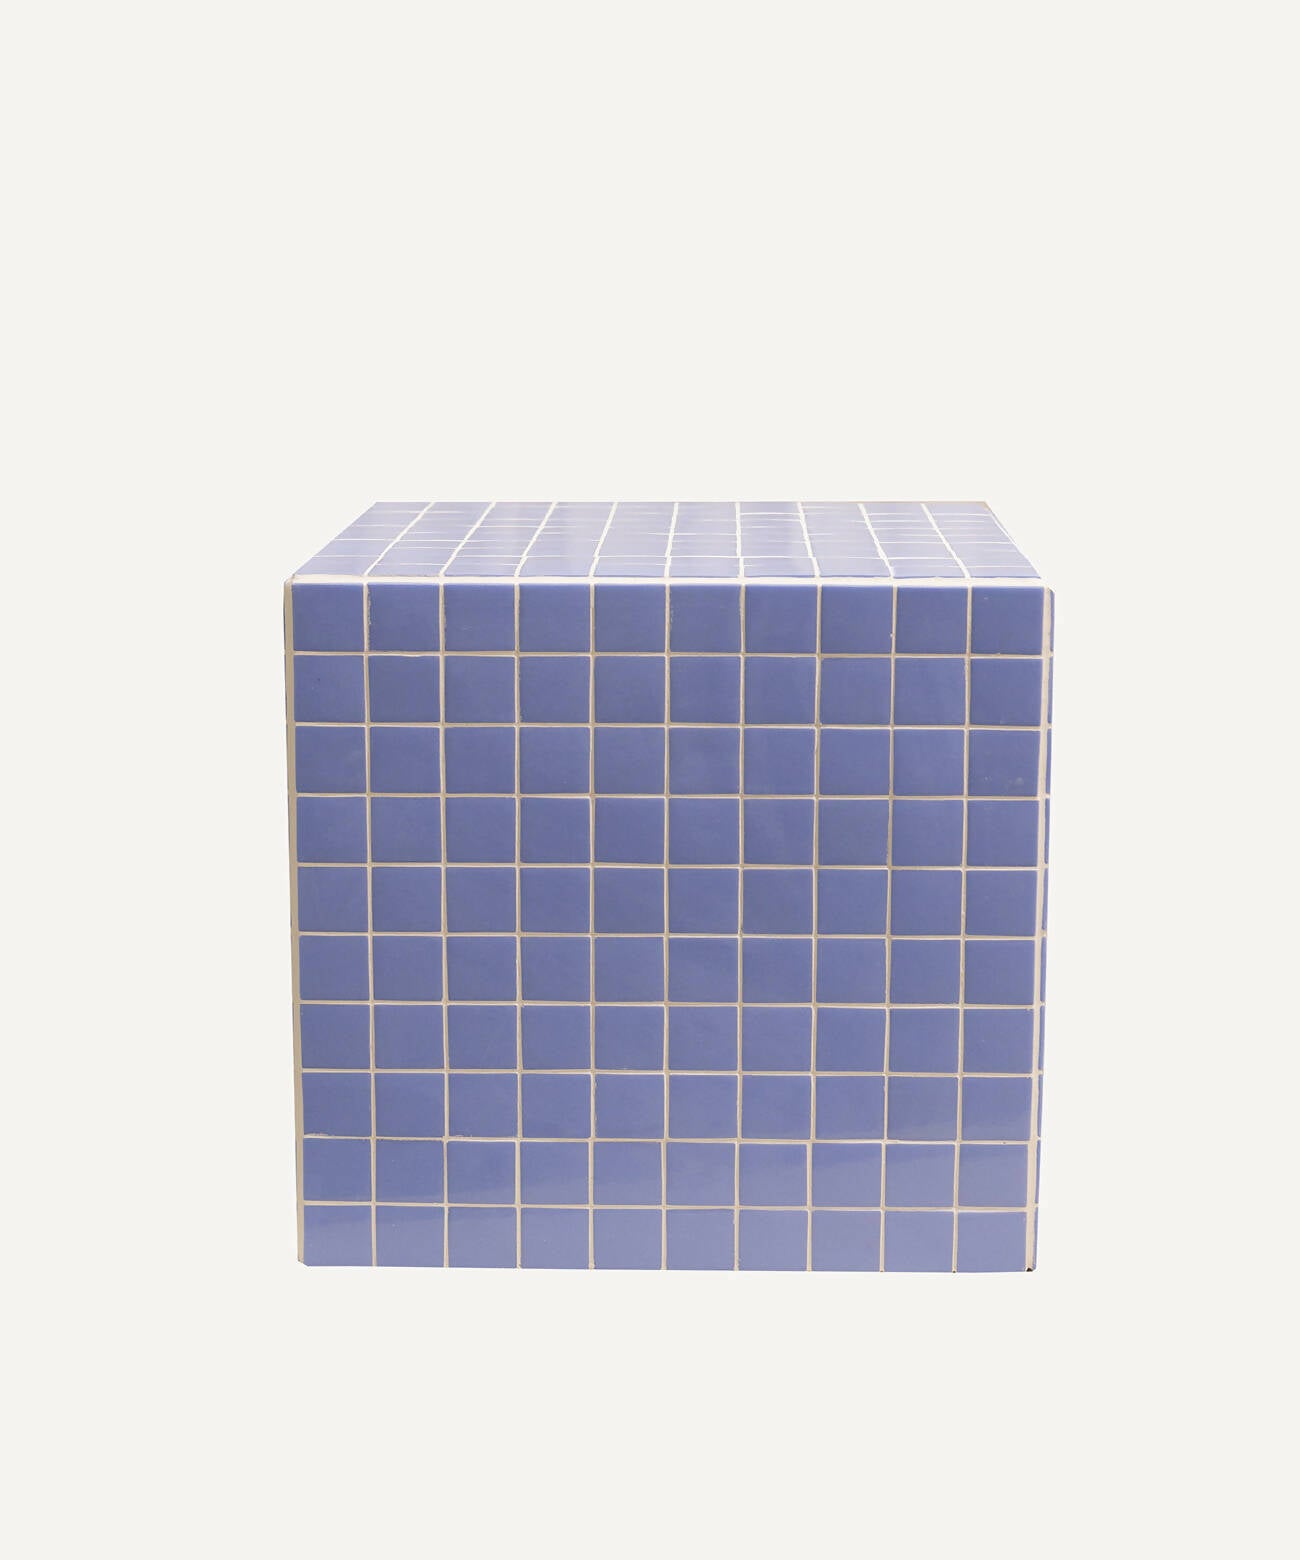 Le Grand Cube